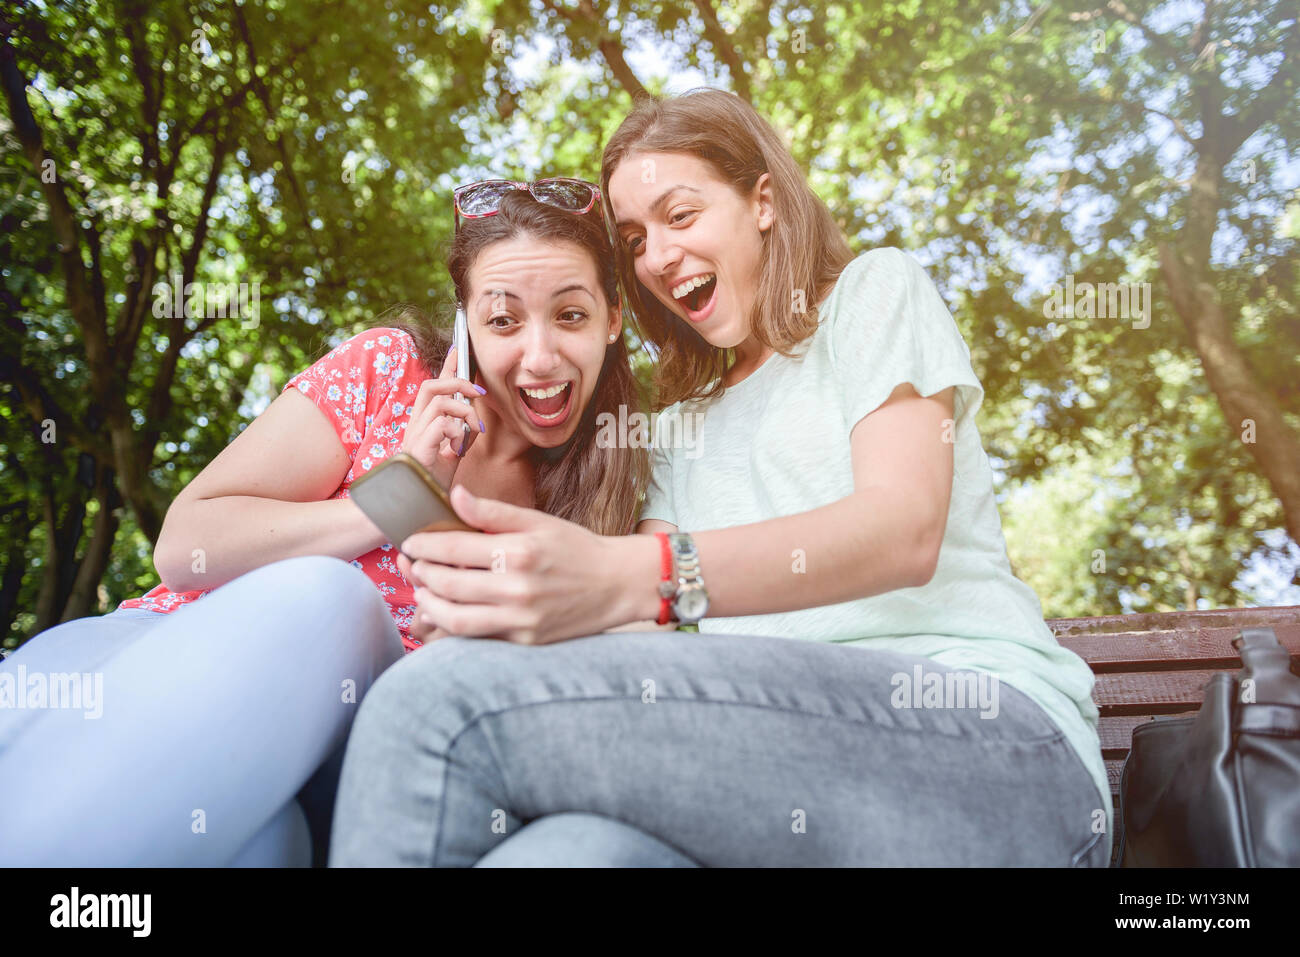 Zwei Mädchen Überraschung soziale Medien unerwartete Jugend tausendjährige Freundschaft Medien Konzept sucht nach neuen Technologie Trends lifestyle Tech sozialen generati Stockfoto